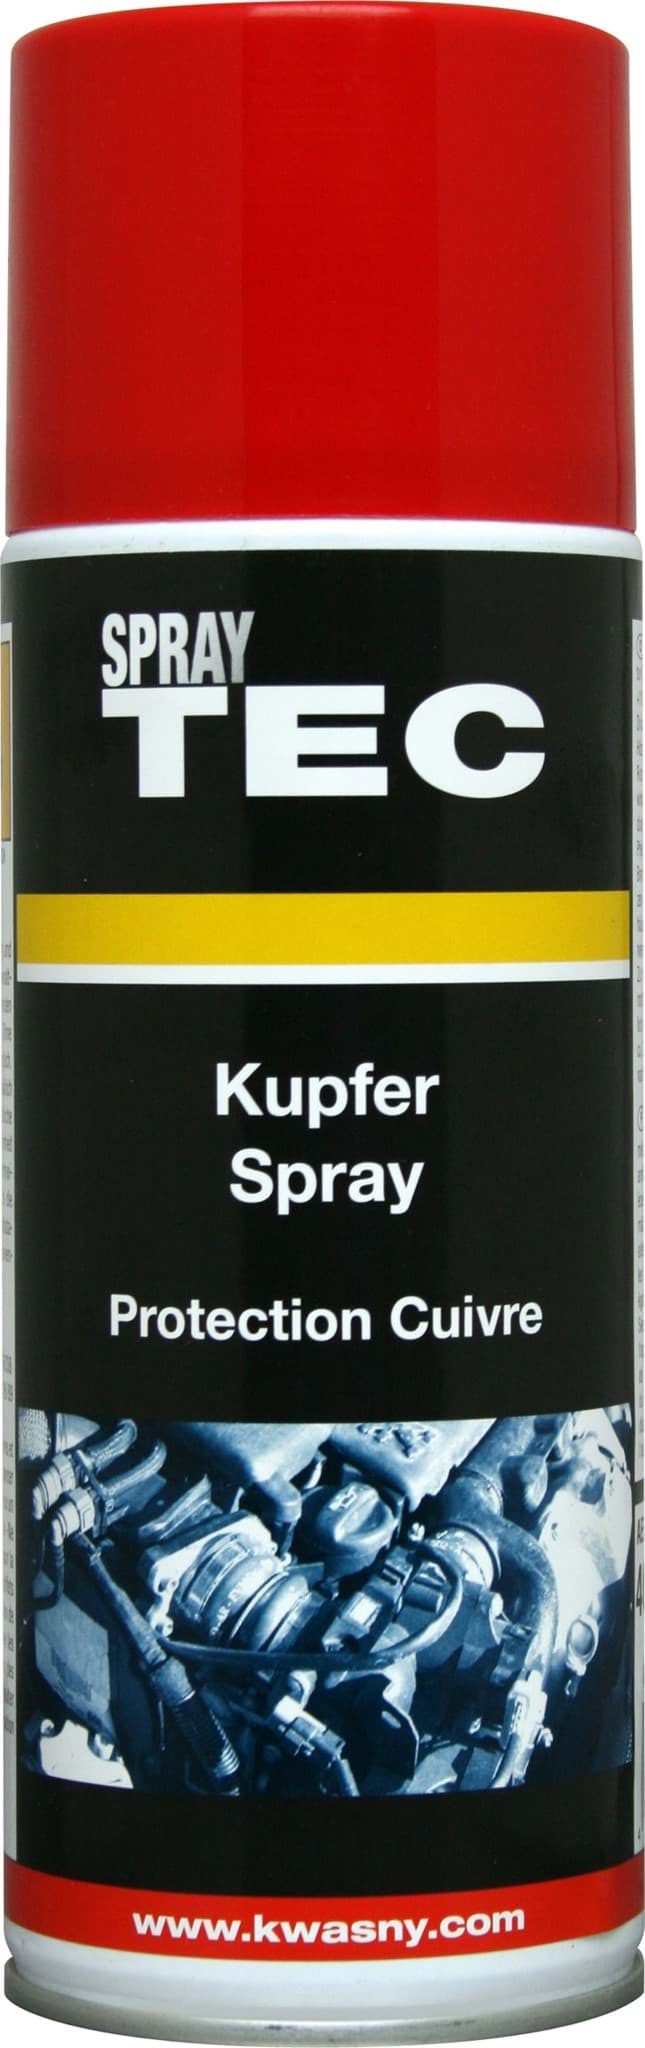 Picture of SprayTec Kupfer-Spray 400ml